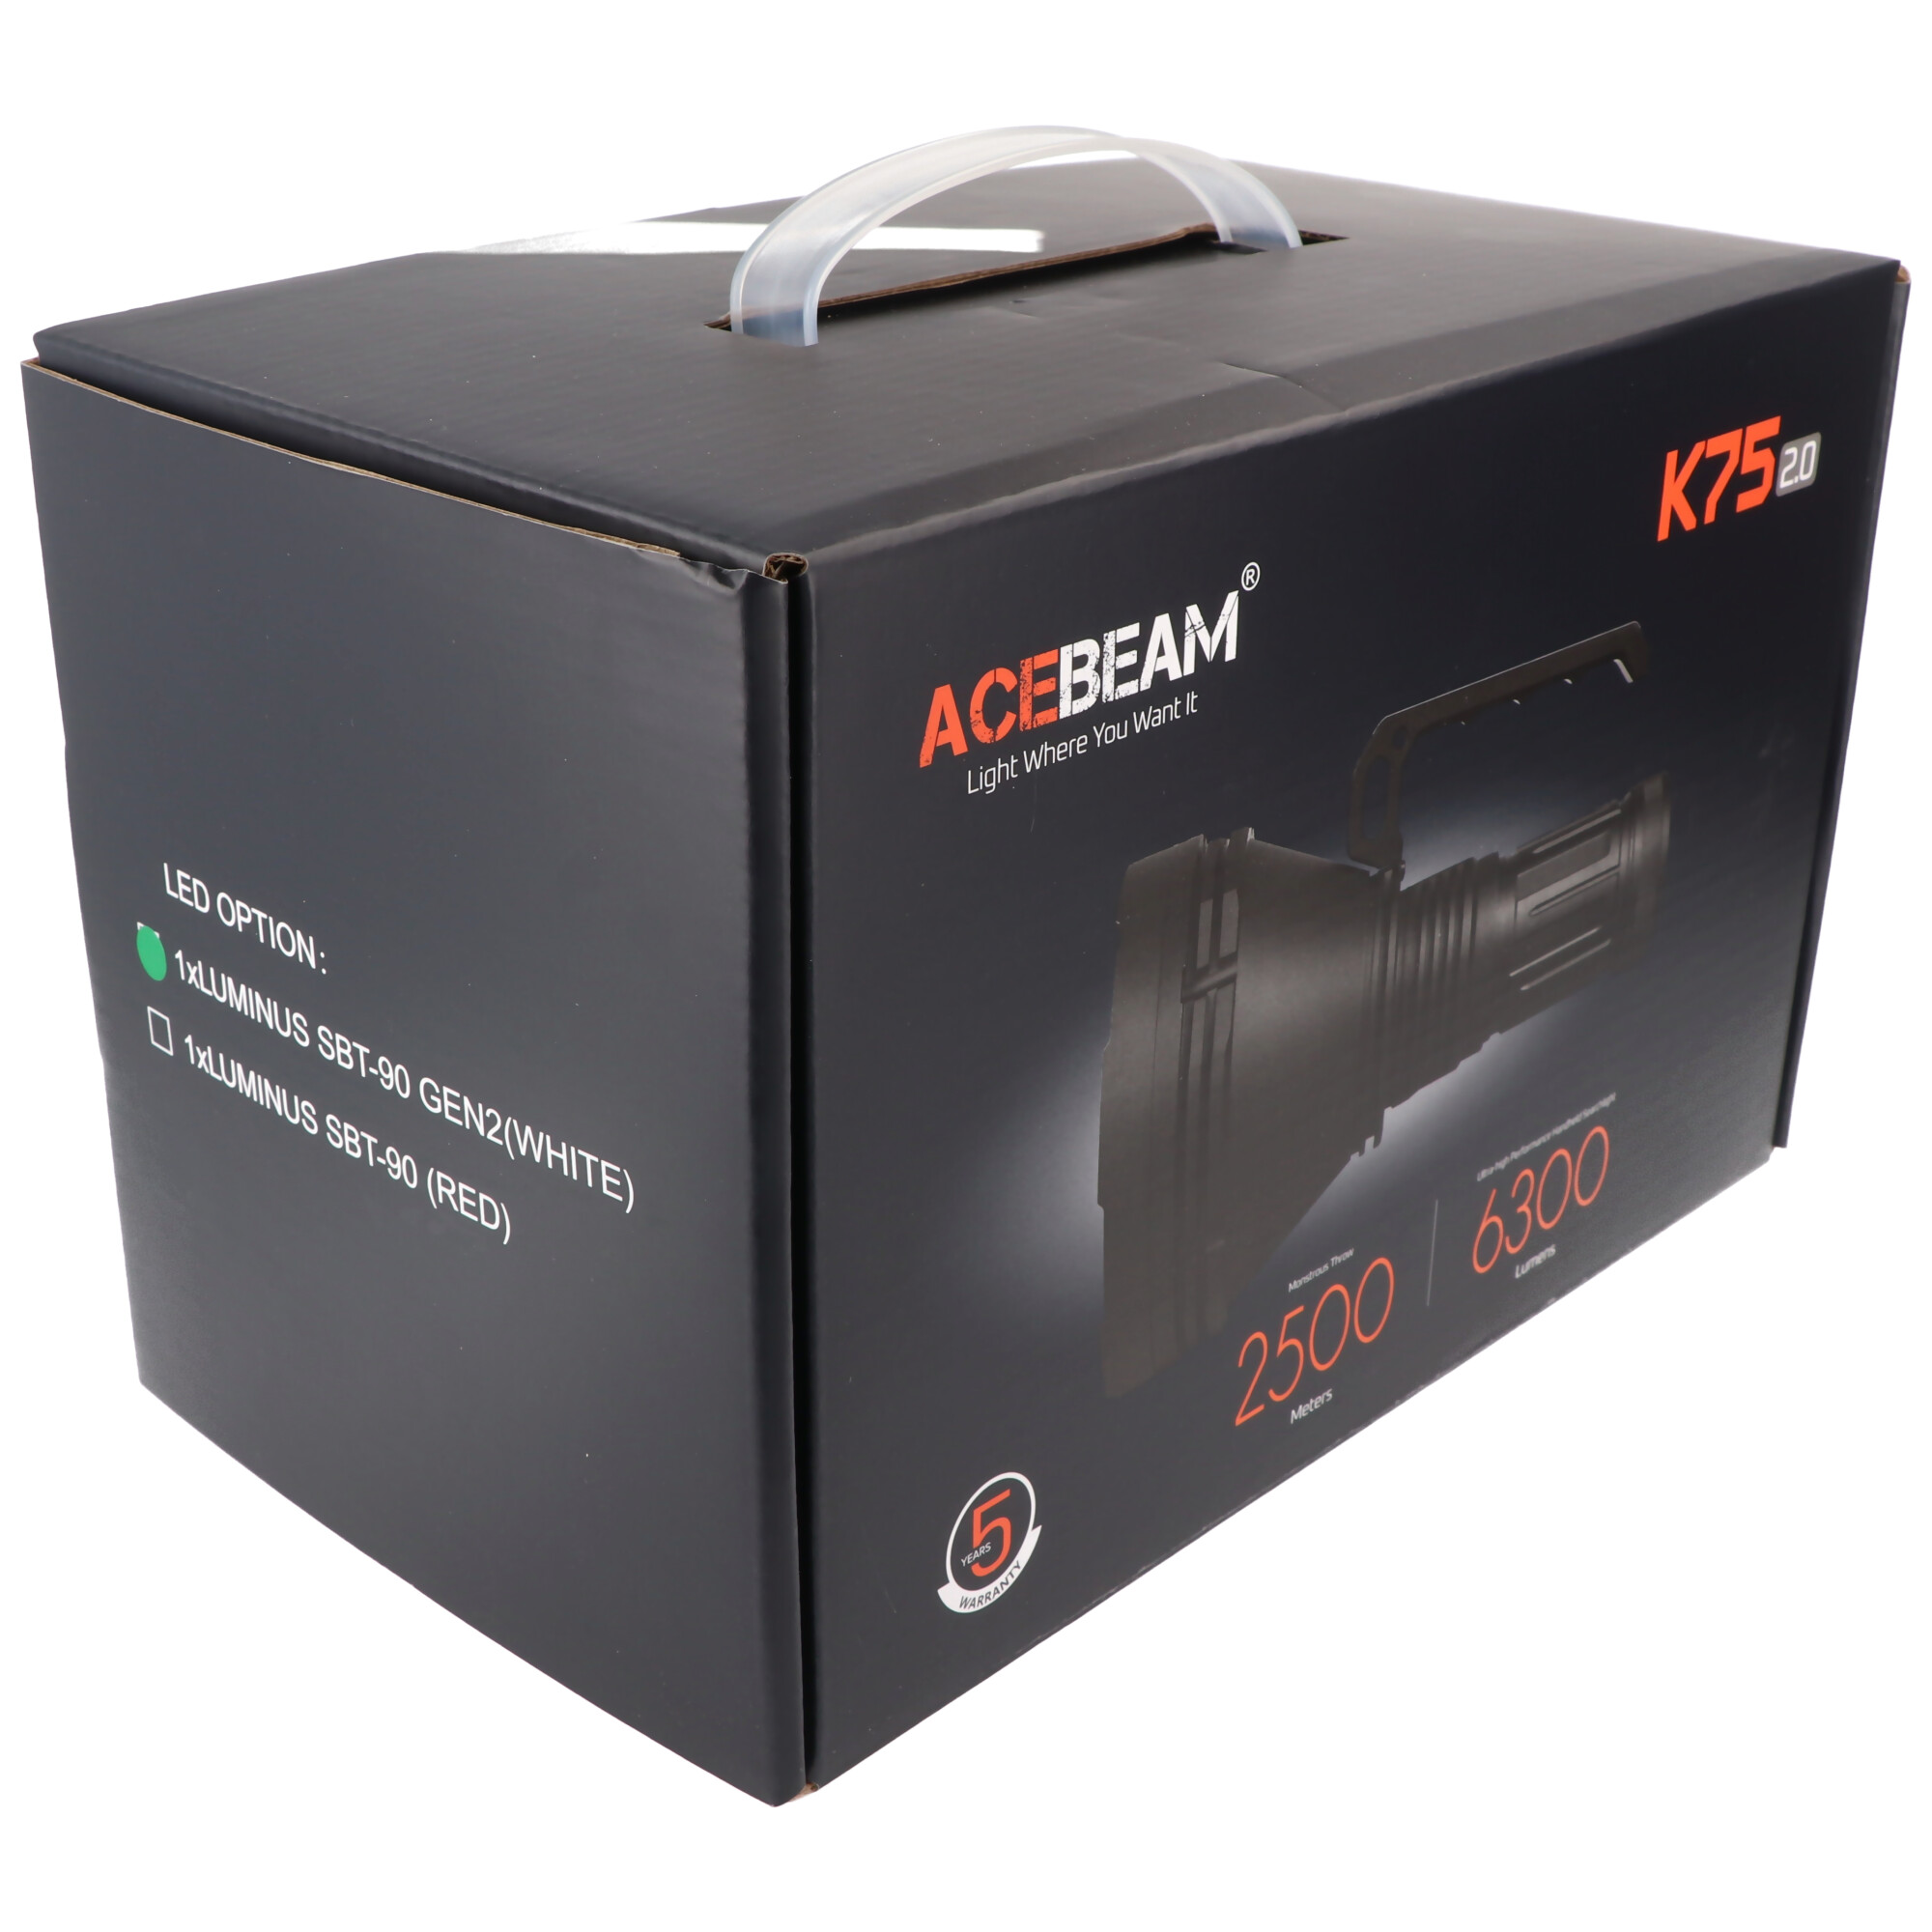 AceBeam K75 2.0 mit weißer LED, 6.300 Lumen und 2.500 Meter Reichweite, Lieferung ohne die erforderlichen 4x 18650 Li-Ion Akkus